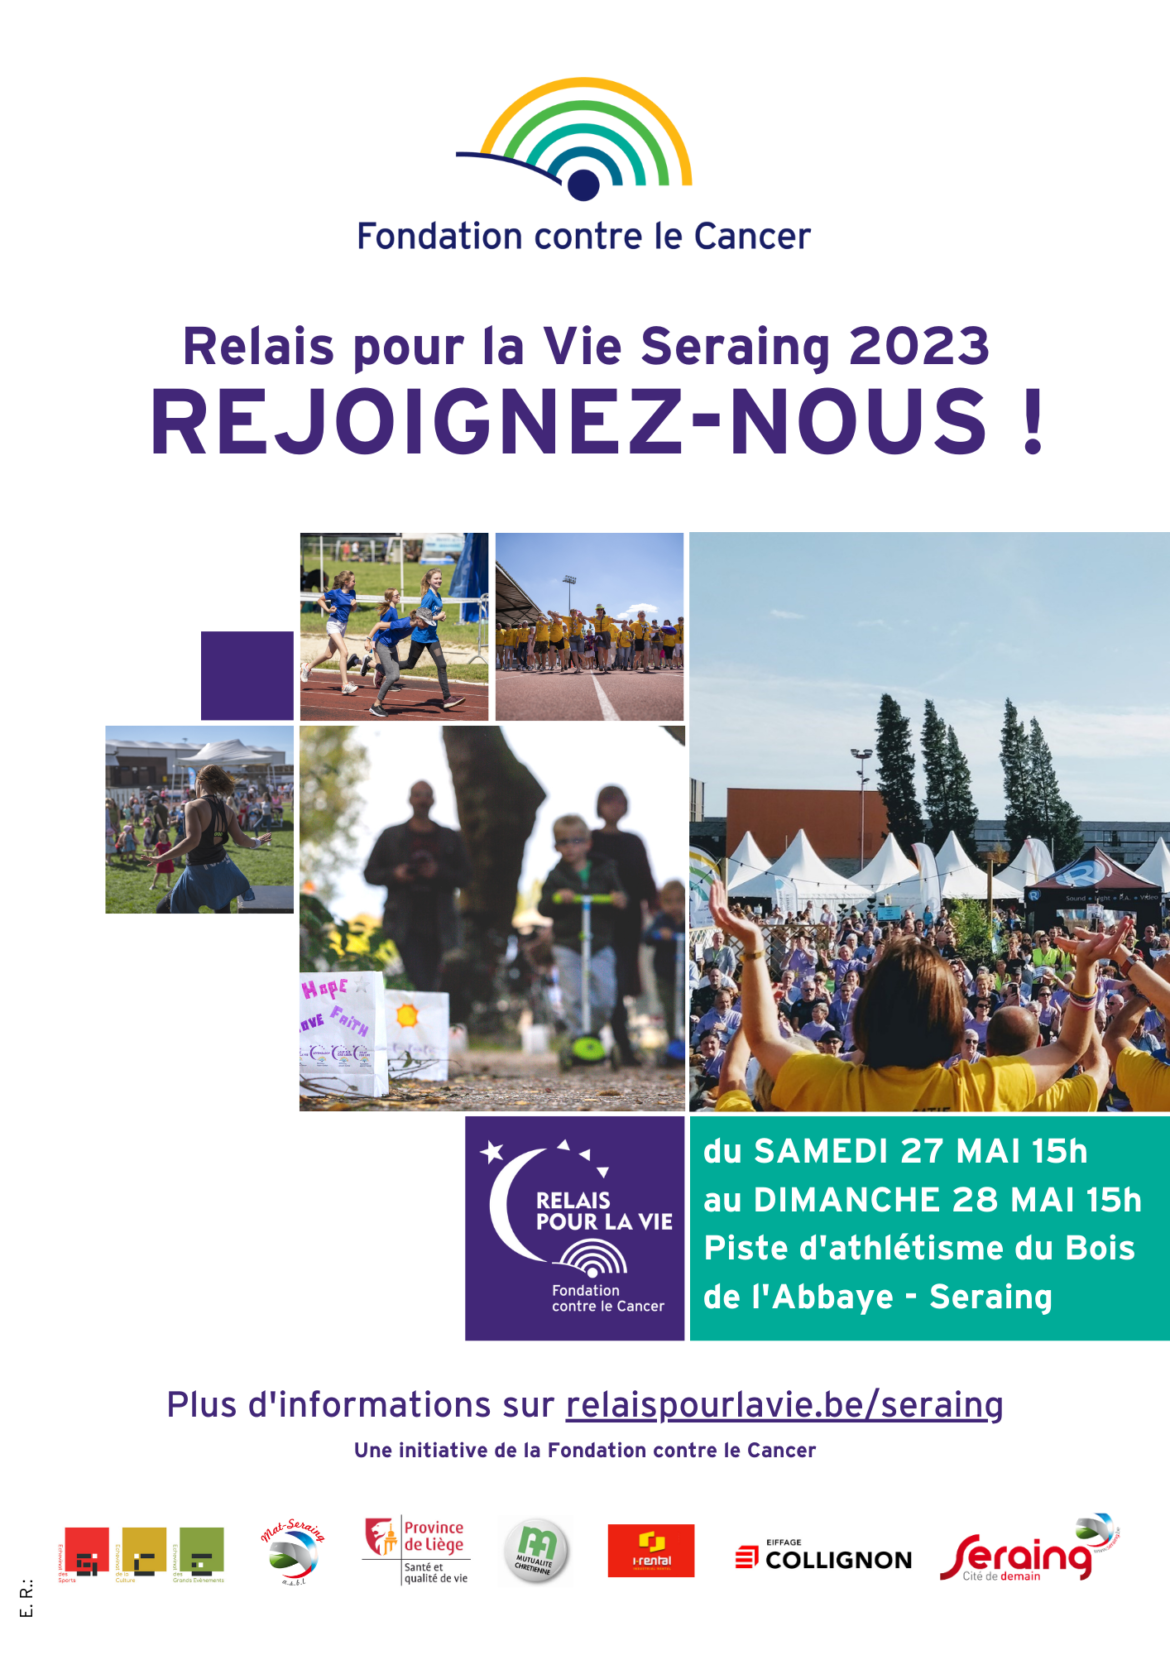 Le Relais pour la Vie organisé à Seraing les 27 et 28 mai 2023